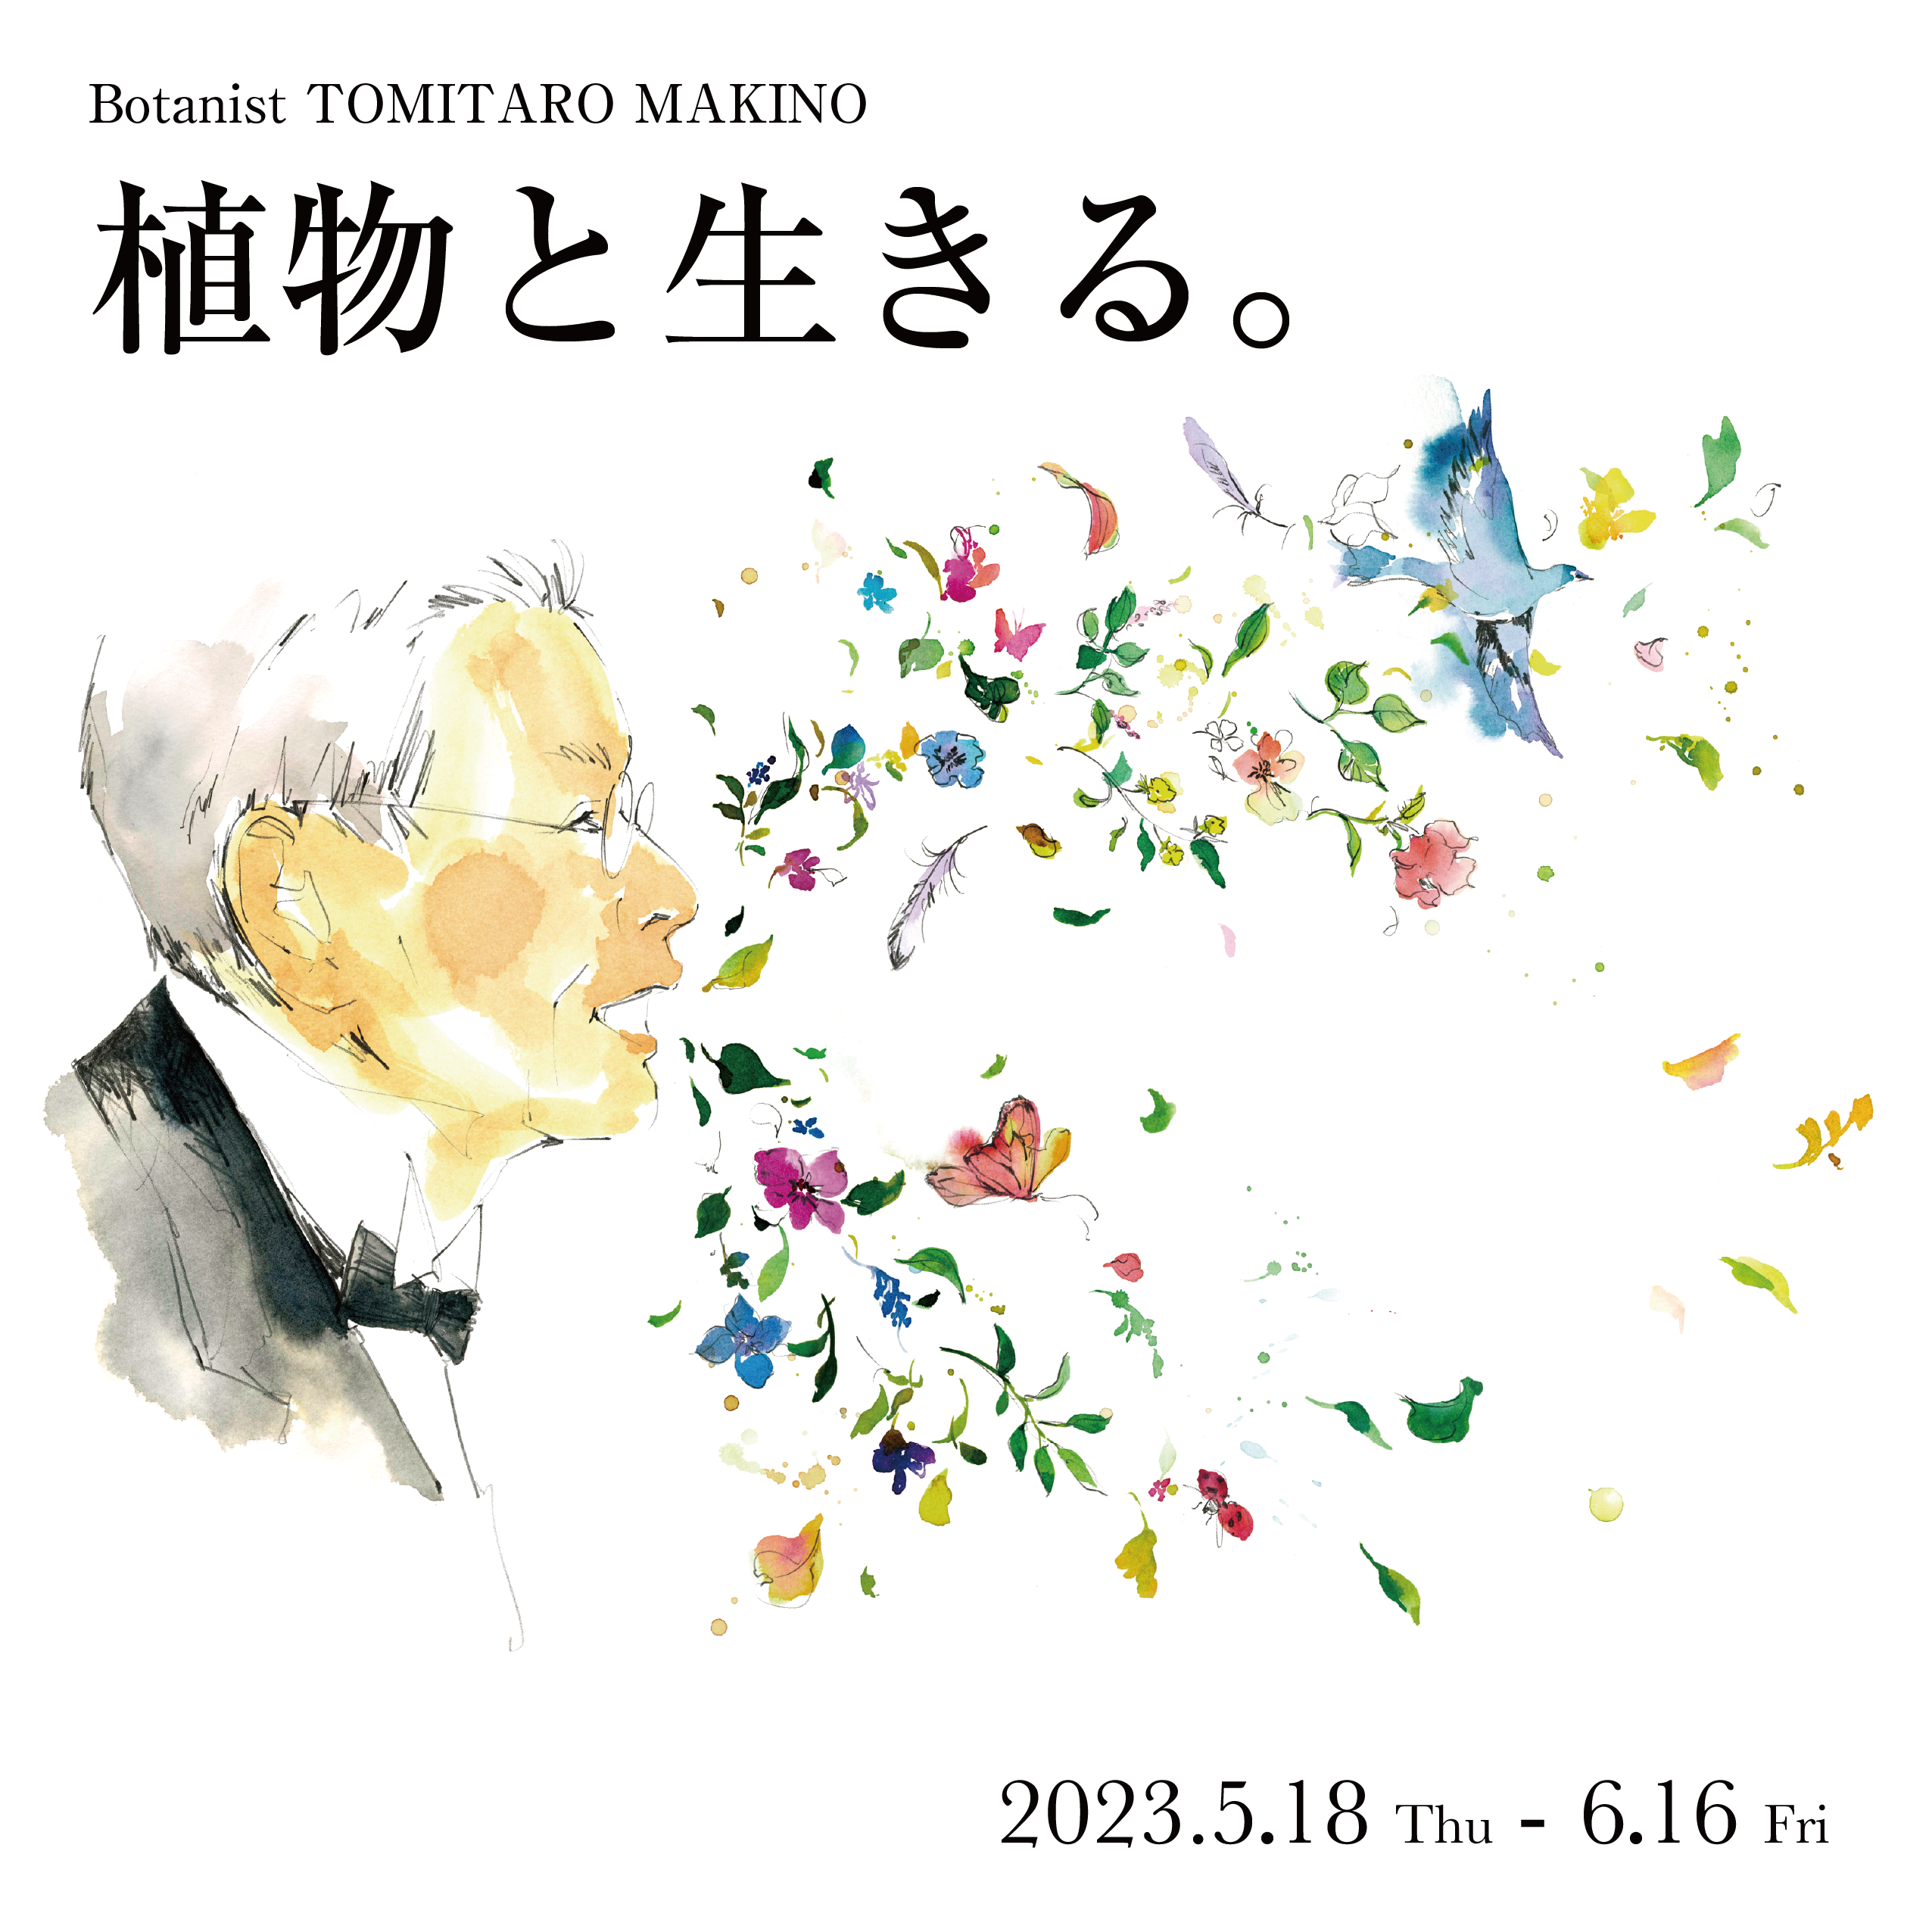 特別公開『東大植物学と植物画 – 牧野富太郎と山田壽雄vol.4 